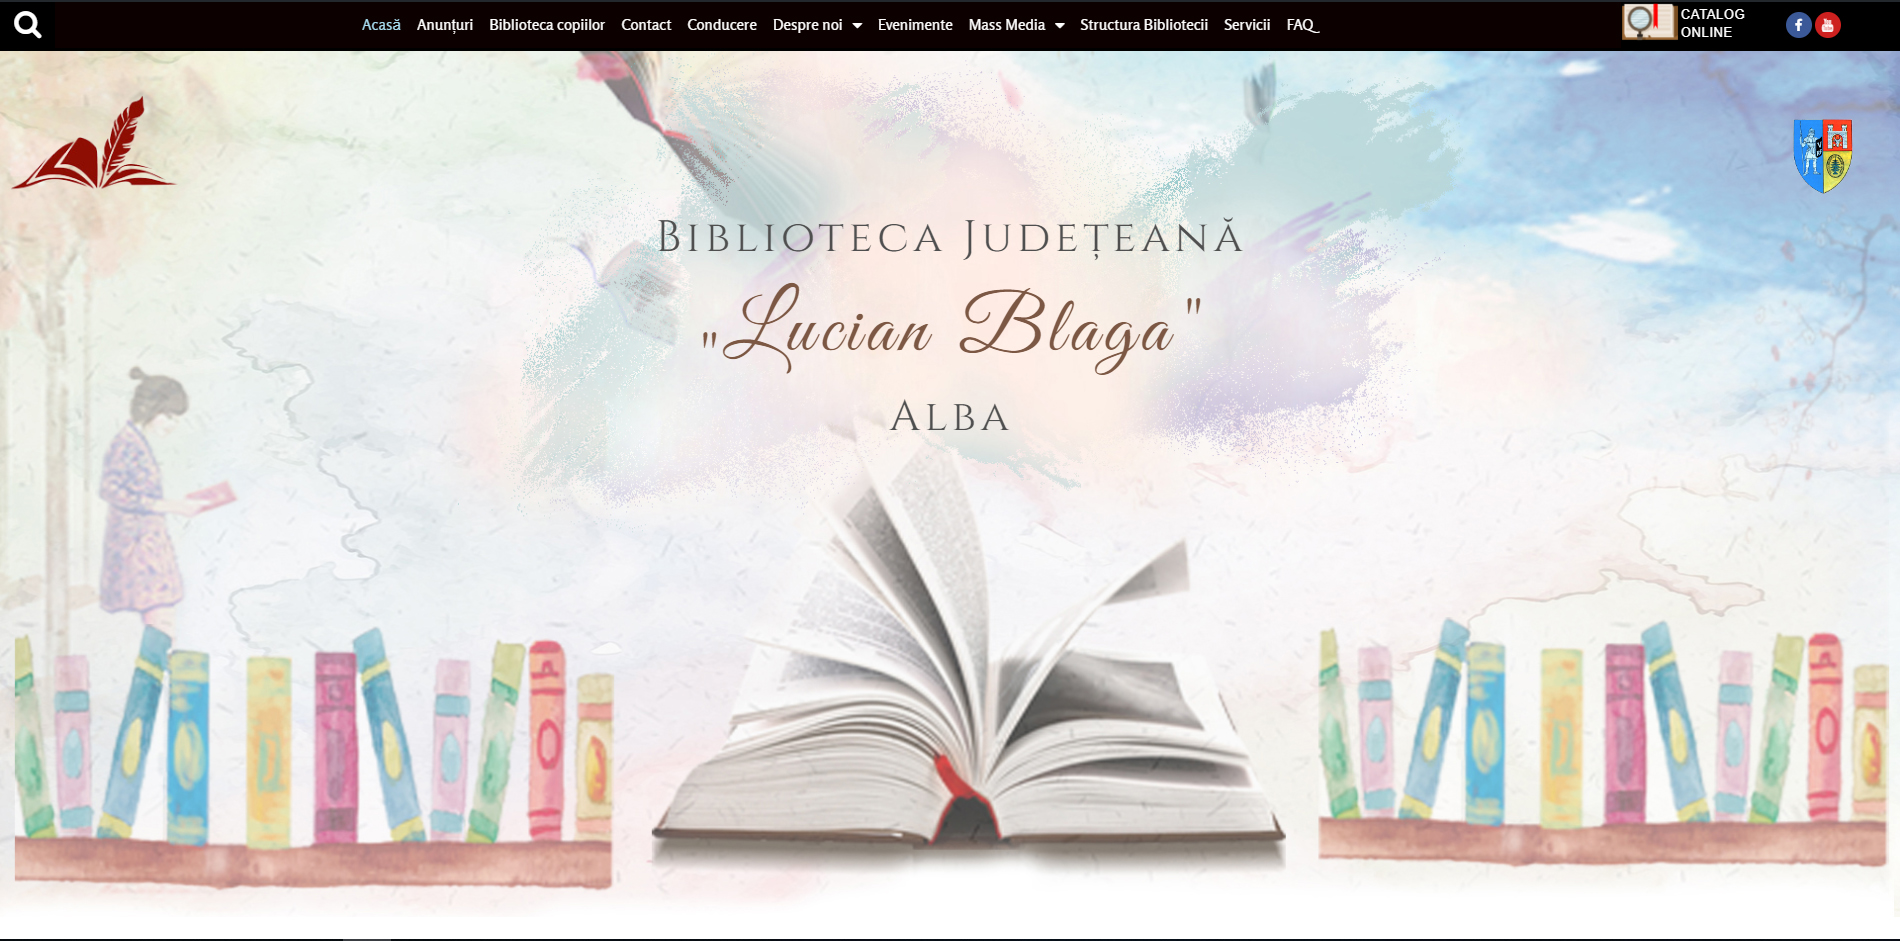 Assumption details Loose Colecţiile bibliotecii - Biblioteca județeană Lucian Blaga, Alba